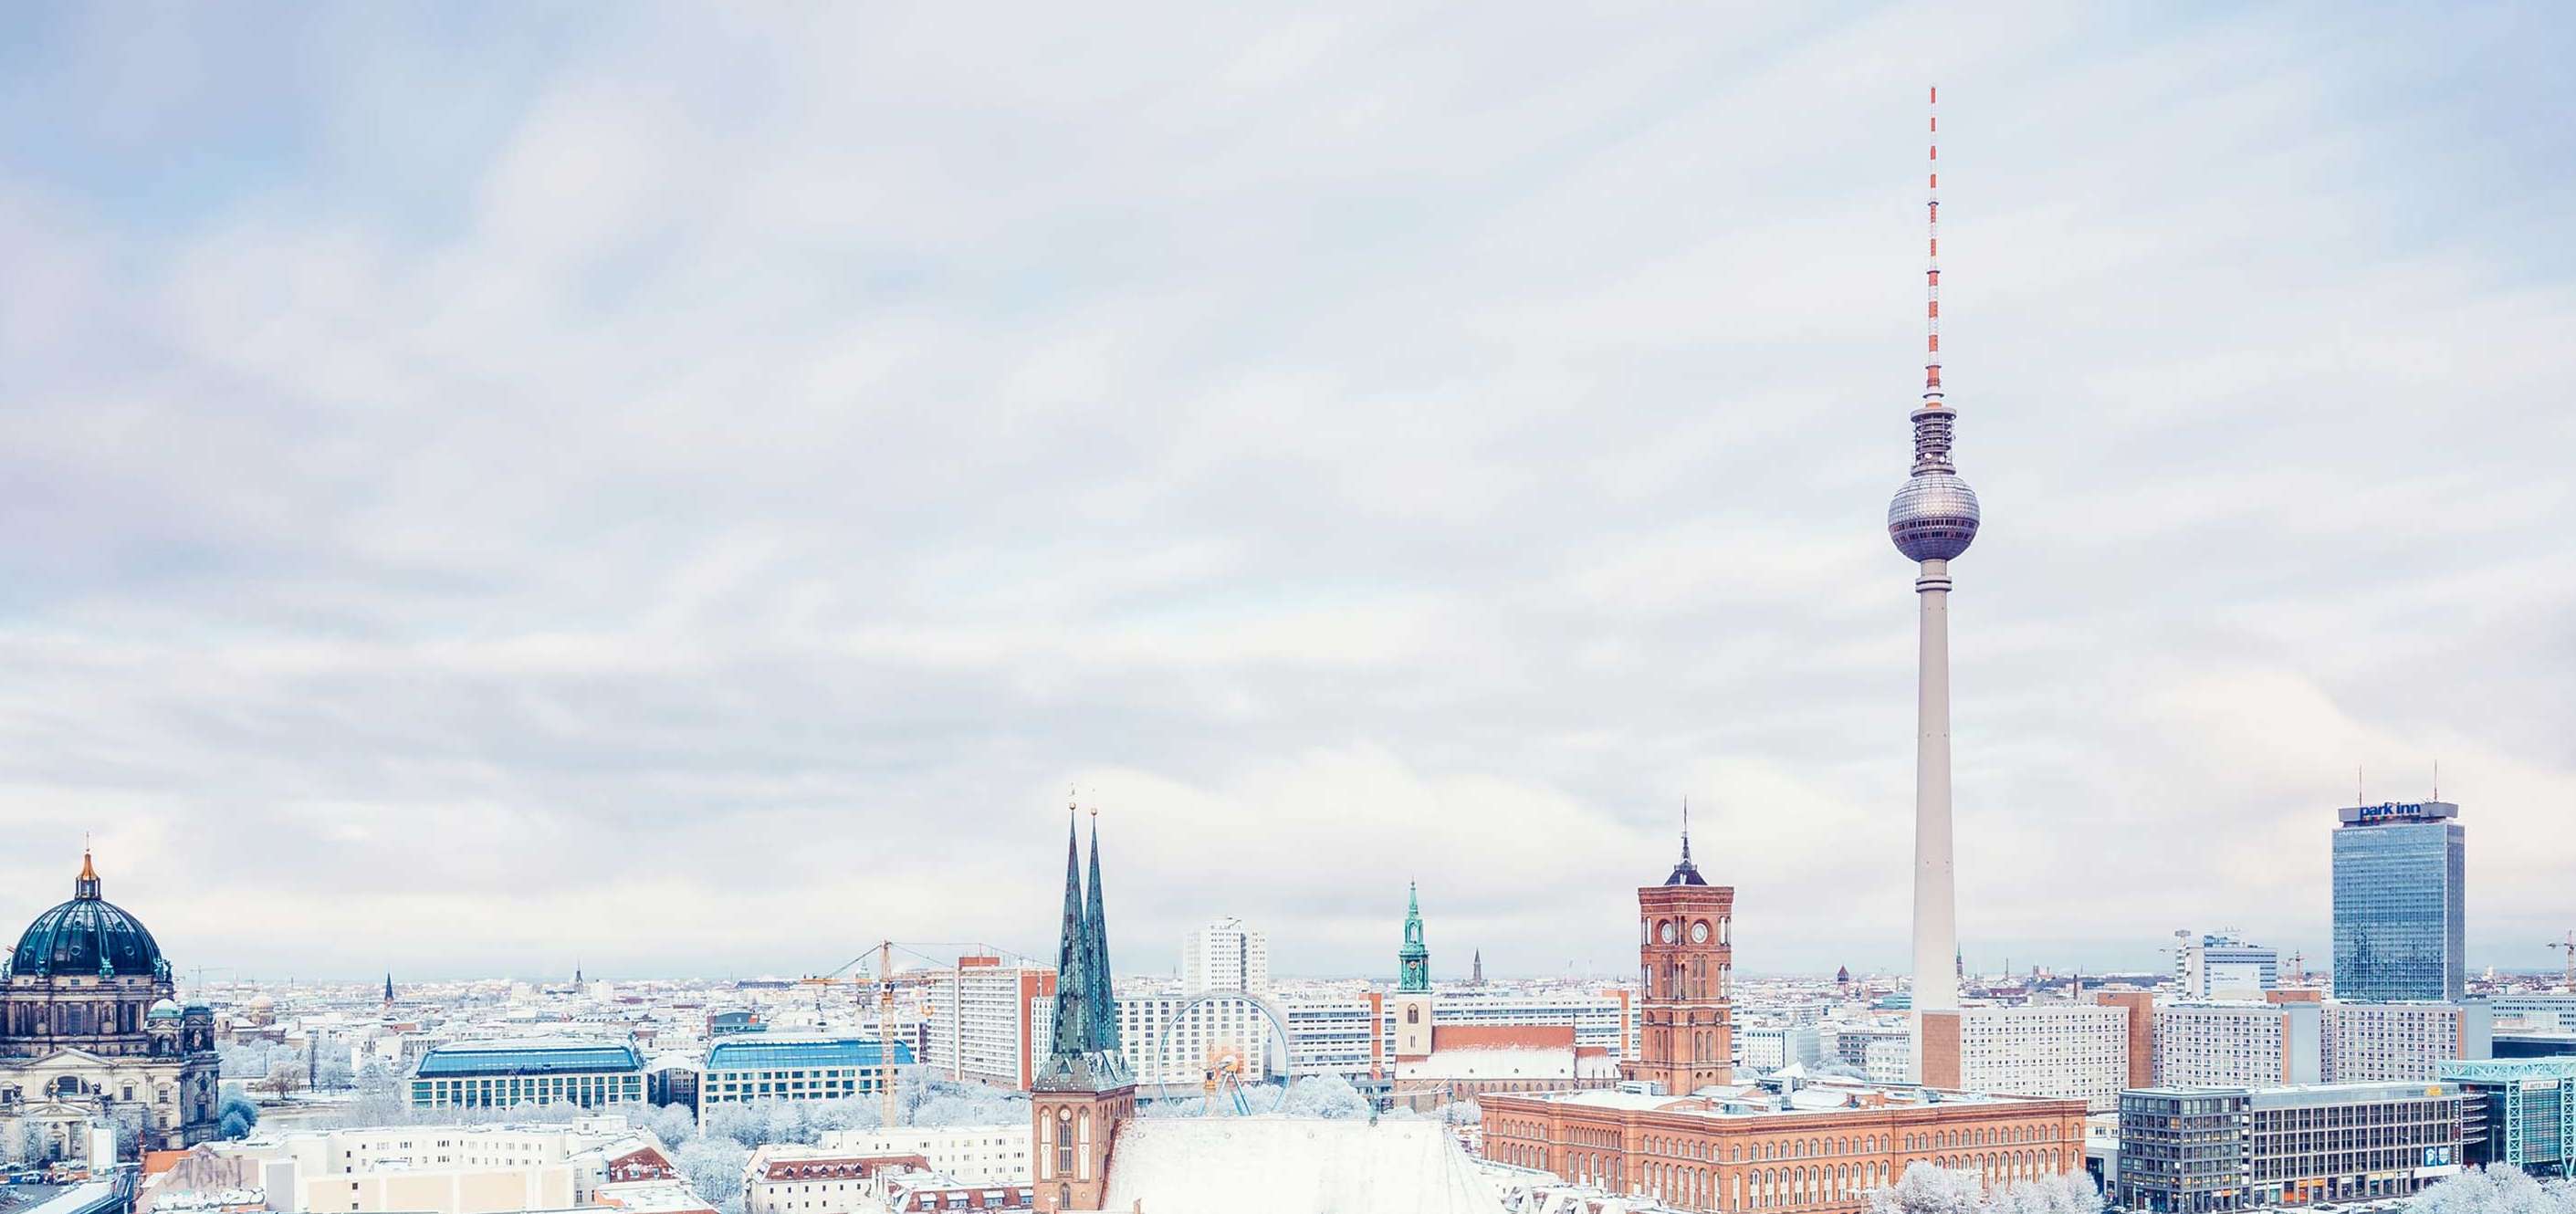 Allianz - Agentursuche Berlin: Berliner Skyline mit Fernsehturm am Tag 